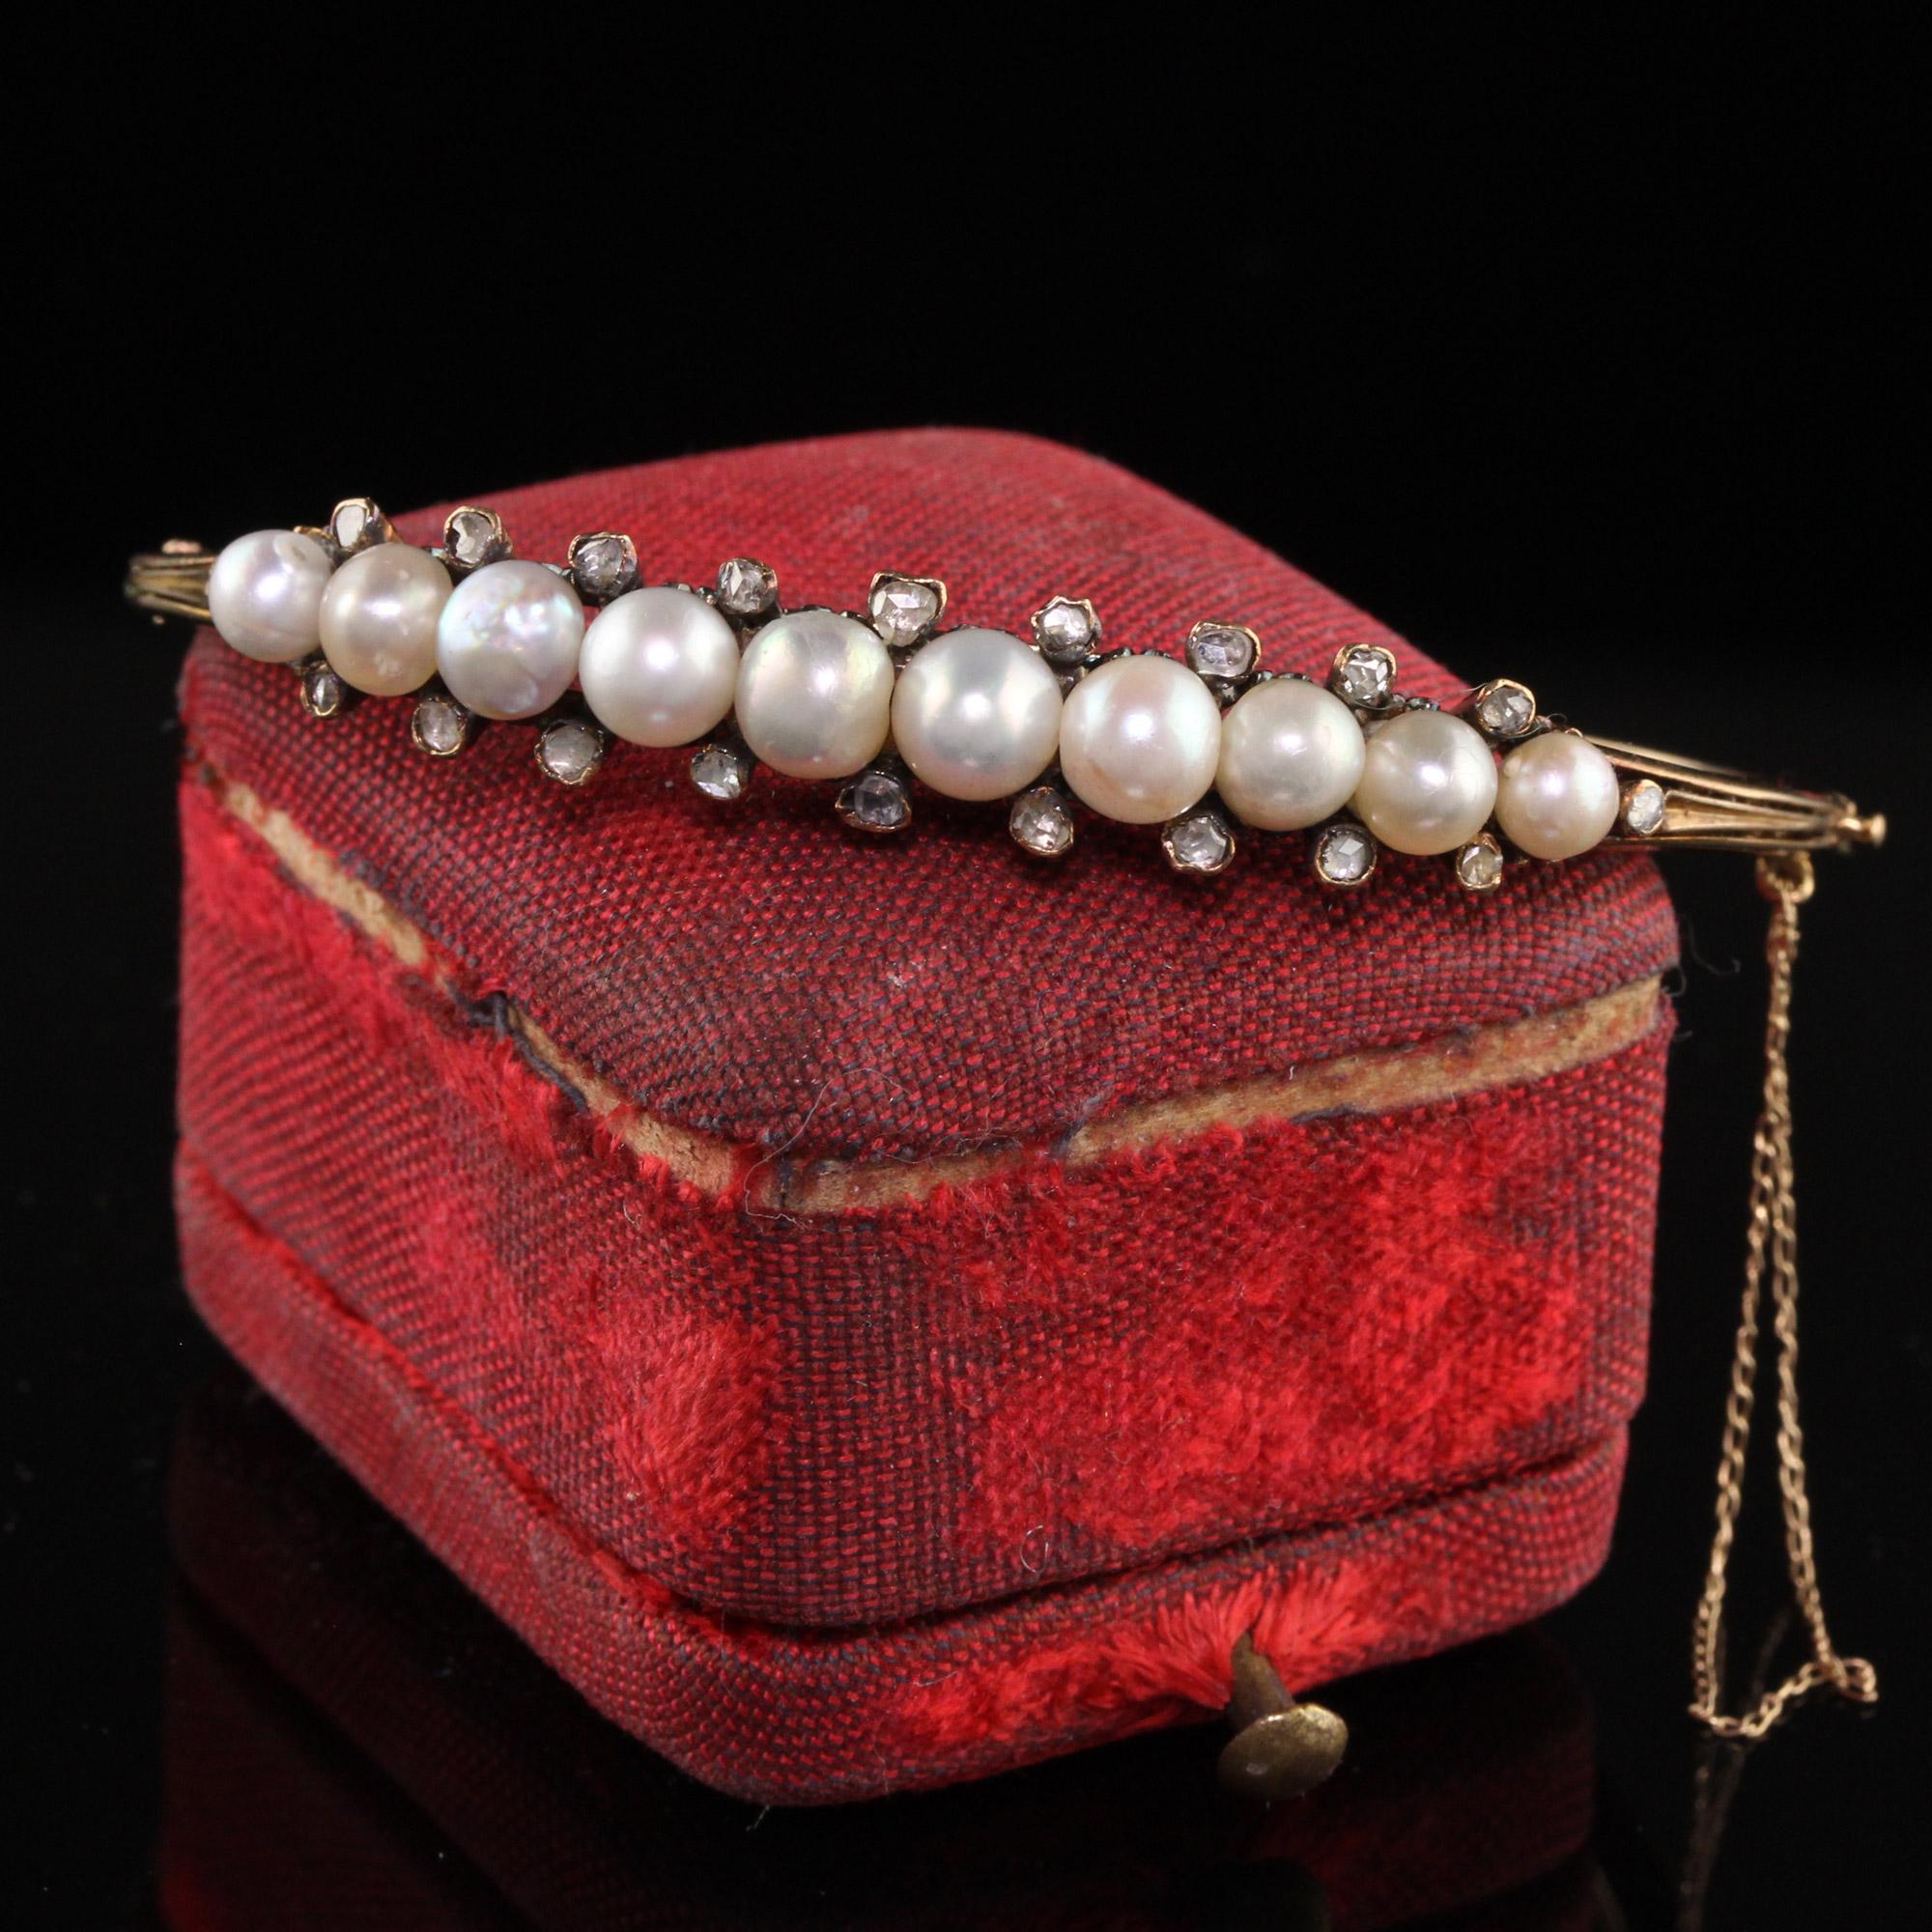 Magnifique bracelet en or jaune 18 carats, de style victorien, en perles naturelles et diamants taillés en rose. Ce magnifique bracelet bangle est fabriqué en or jaune 18 carats. La partie supérieure contient dix perles naturelles et est ornée de